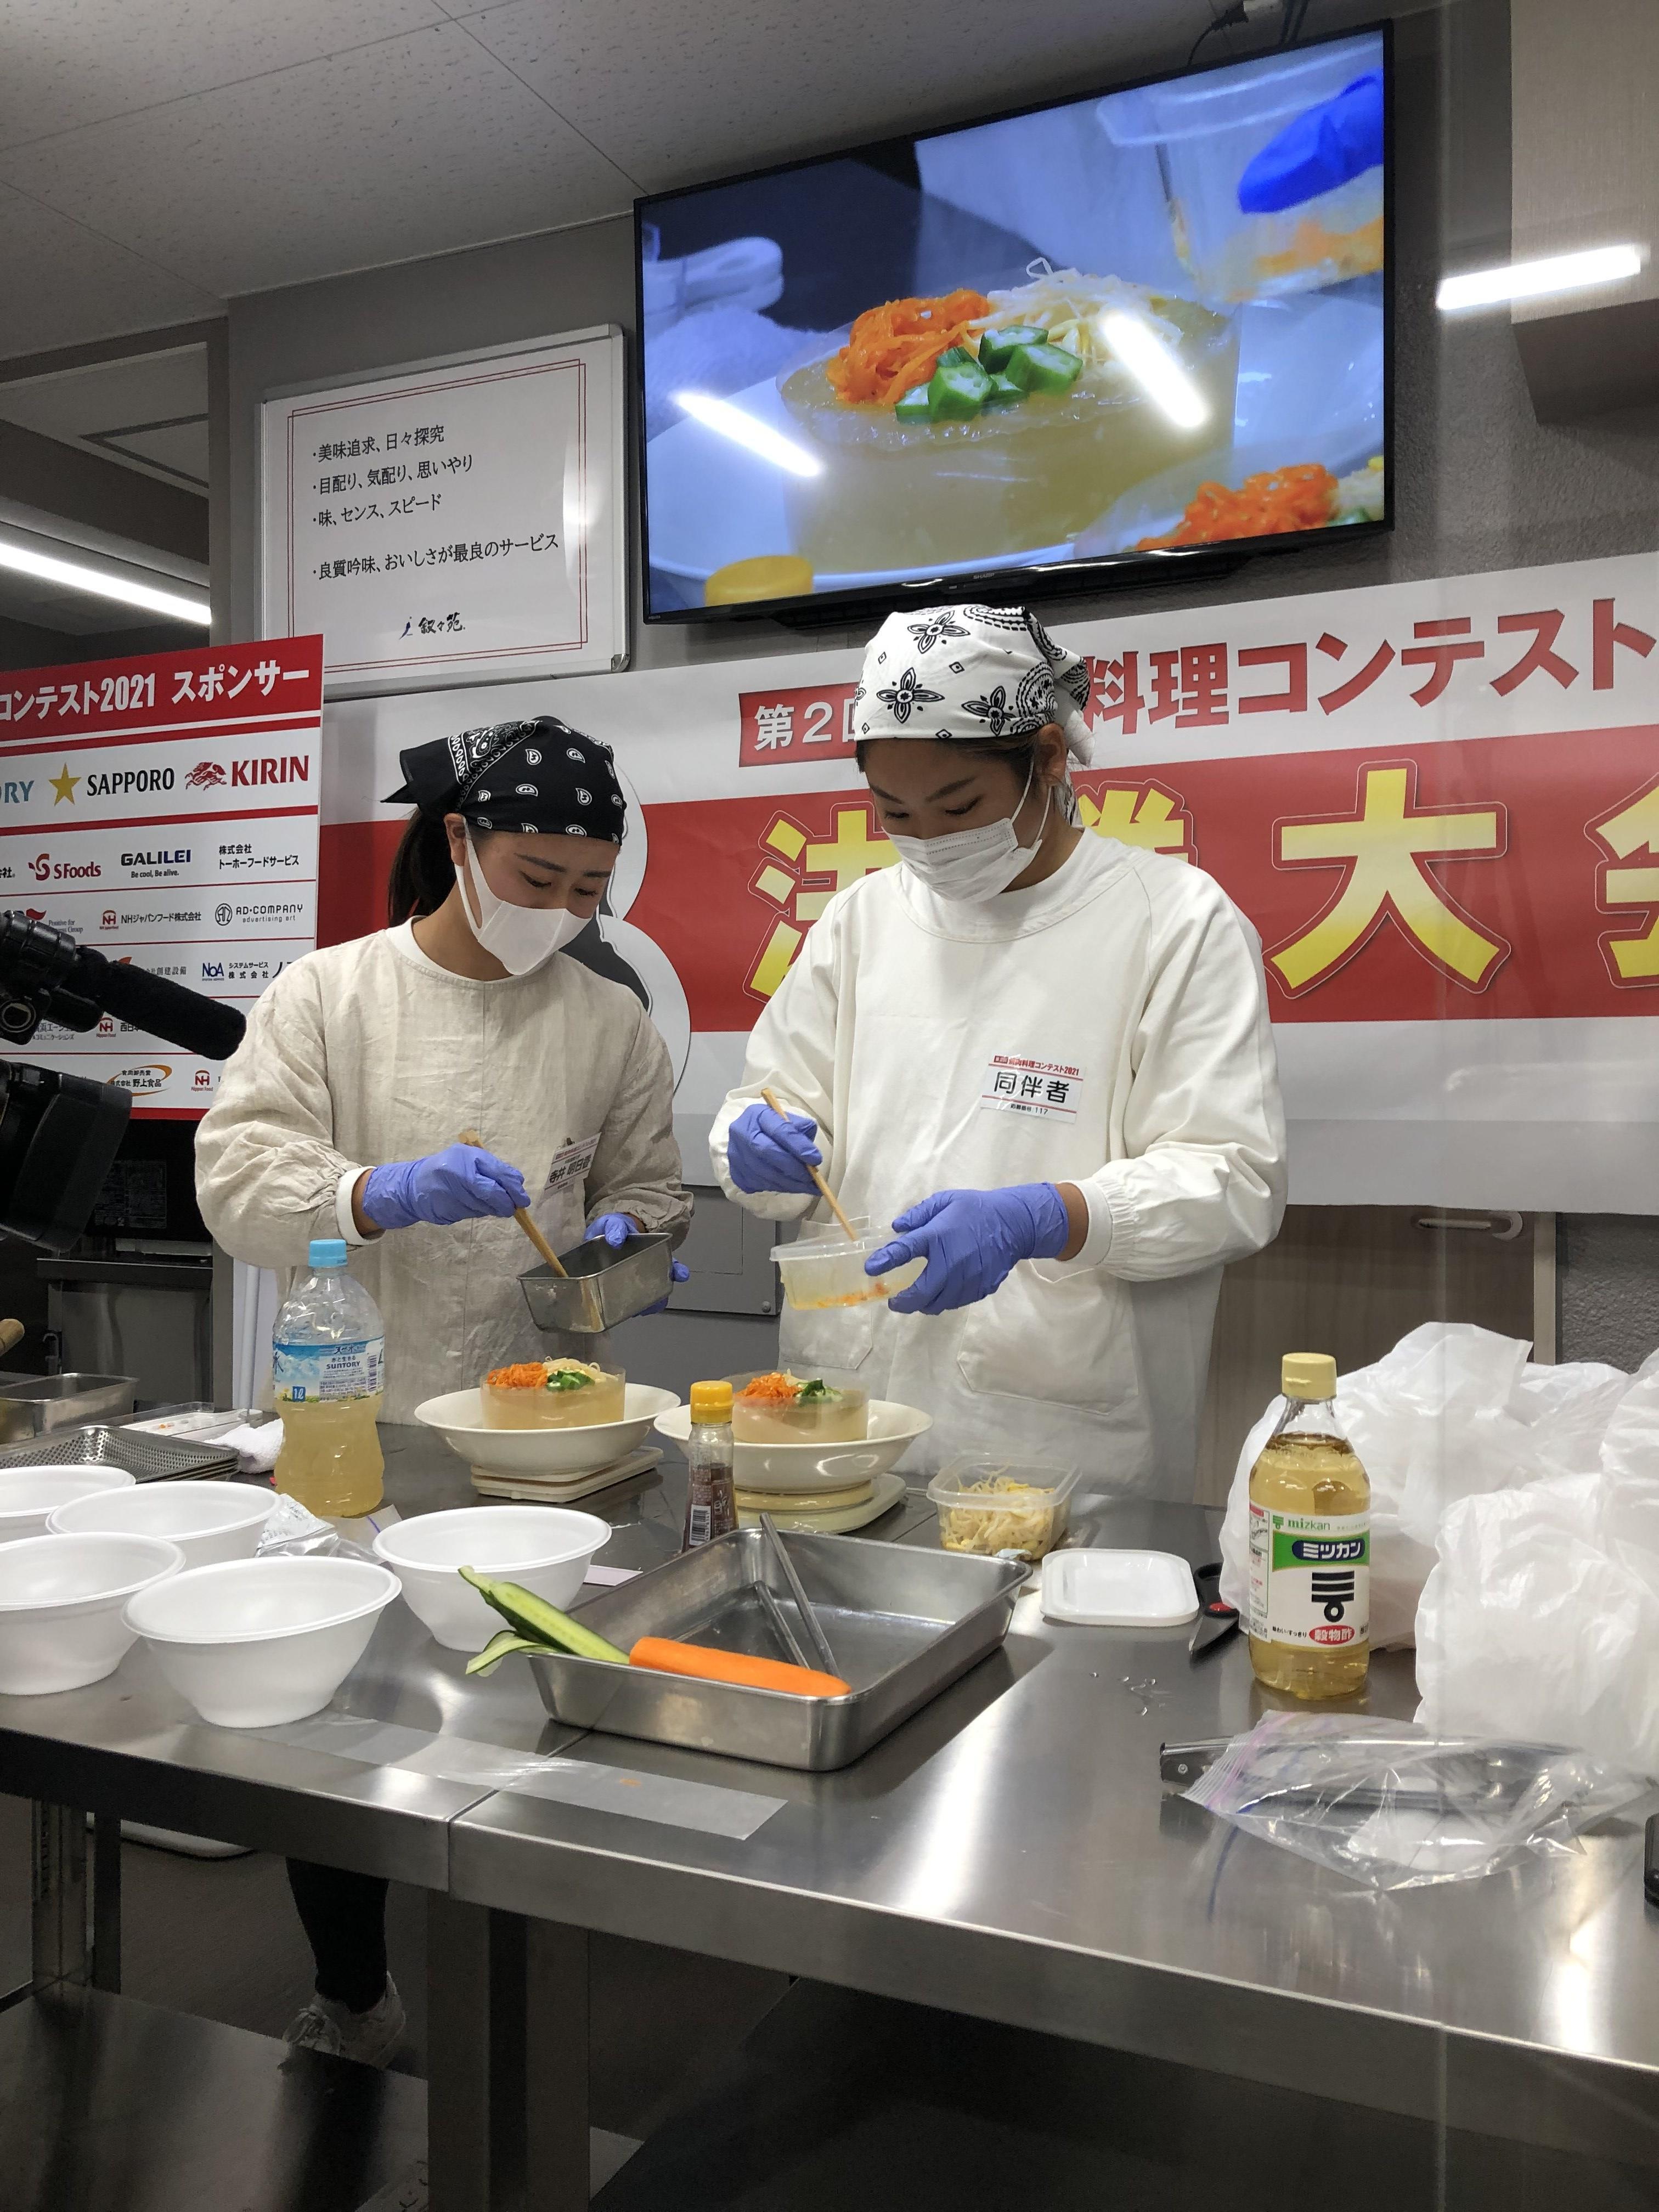 「焼肉料理コンテスト2021」 -- 焼肉屋さんで食べたい麺料理 -- で現場を意識した学生のレシピが『審査員特別賞』を受賞～大阪国際大学人間科学部人間健康科学科